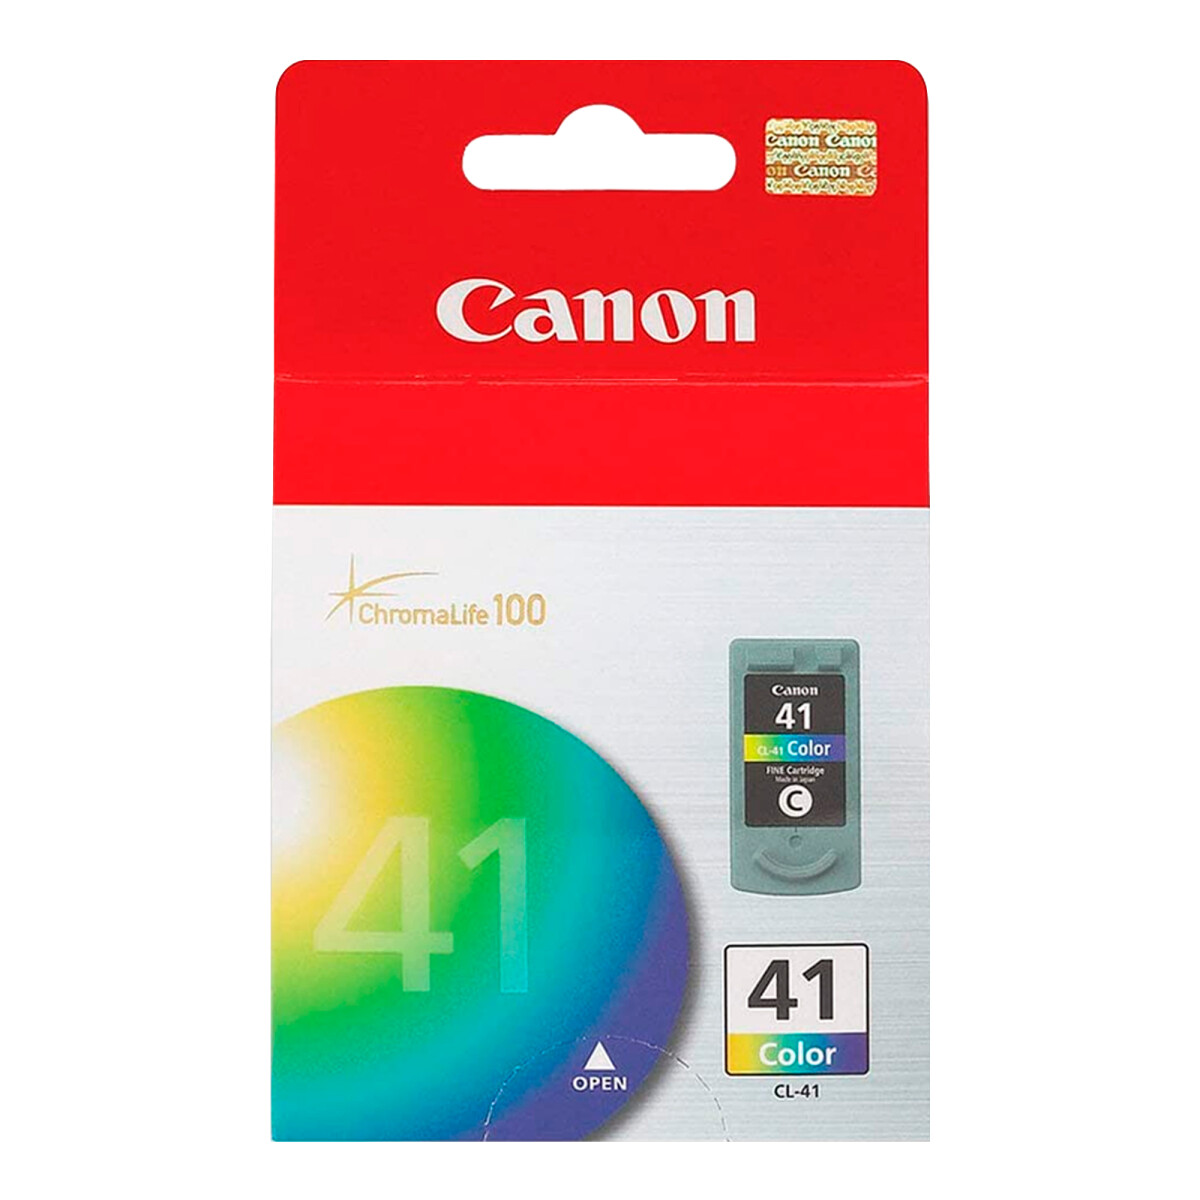 Canon - Cartucho CL-41 Color 0617B050AA - Inyección a Tinta. 12ML. - 001 